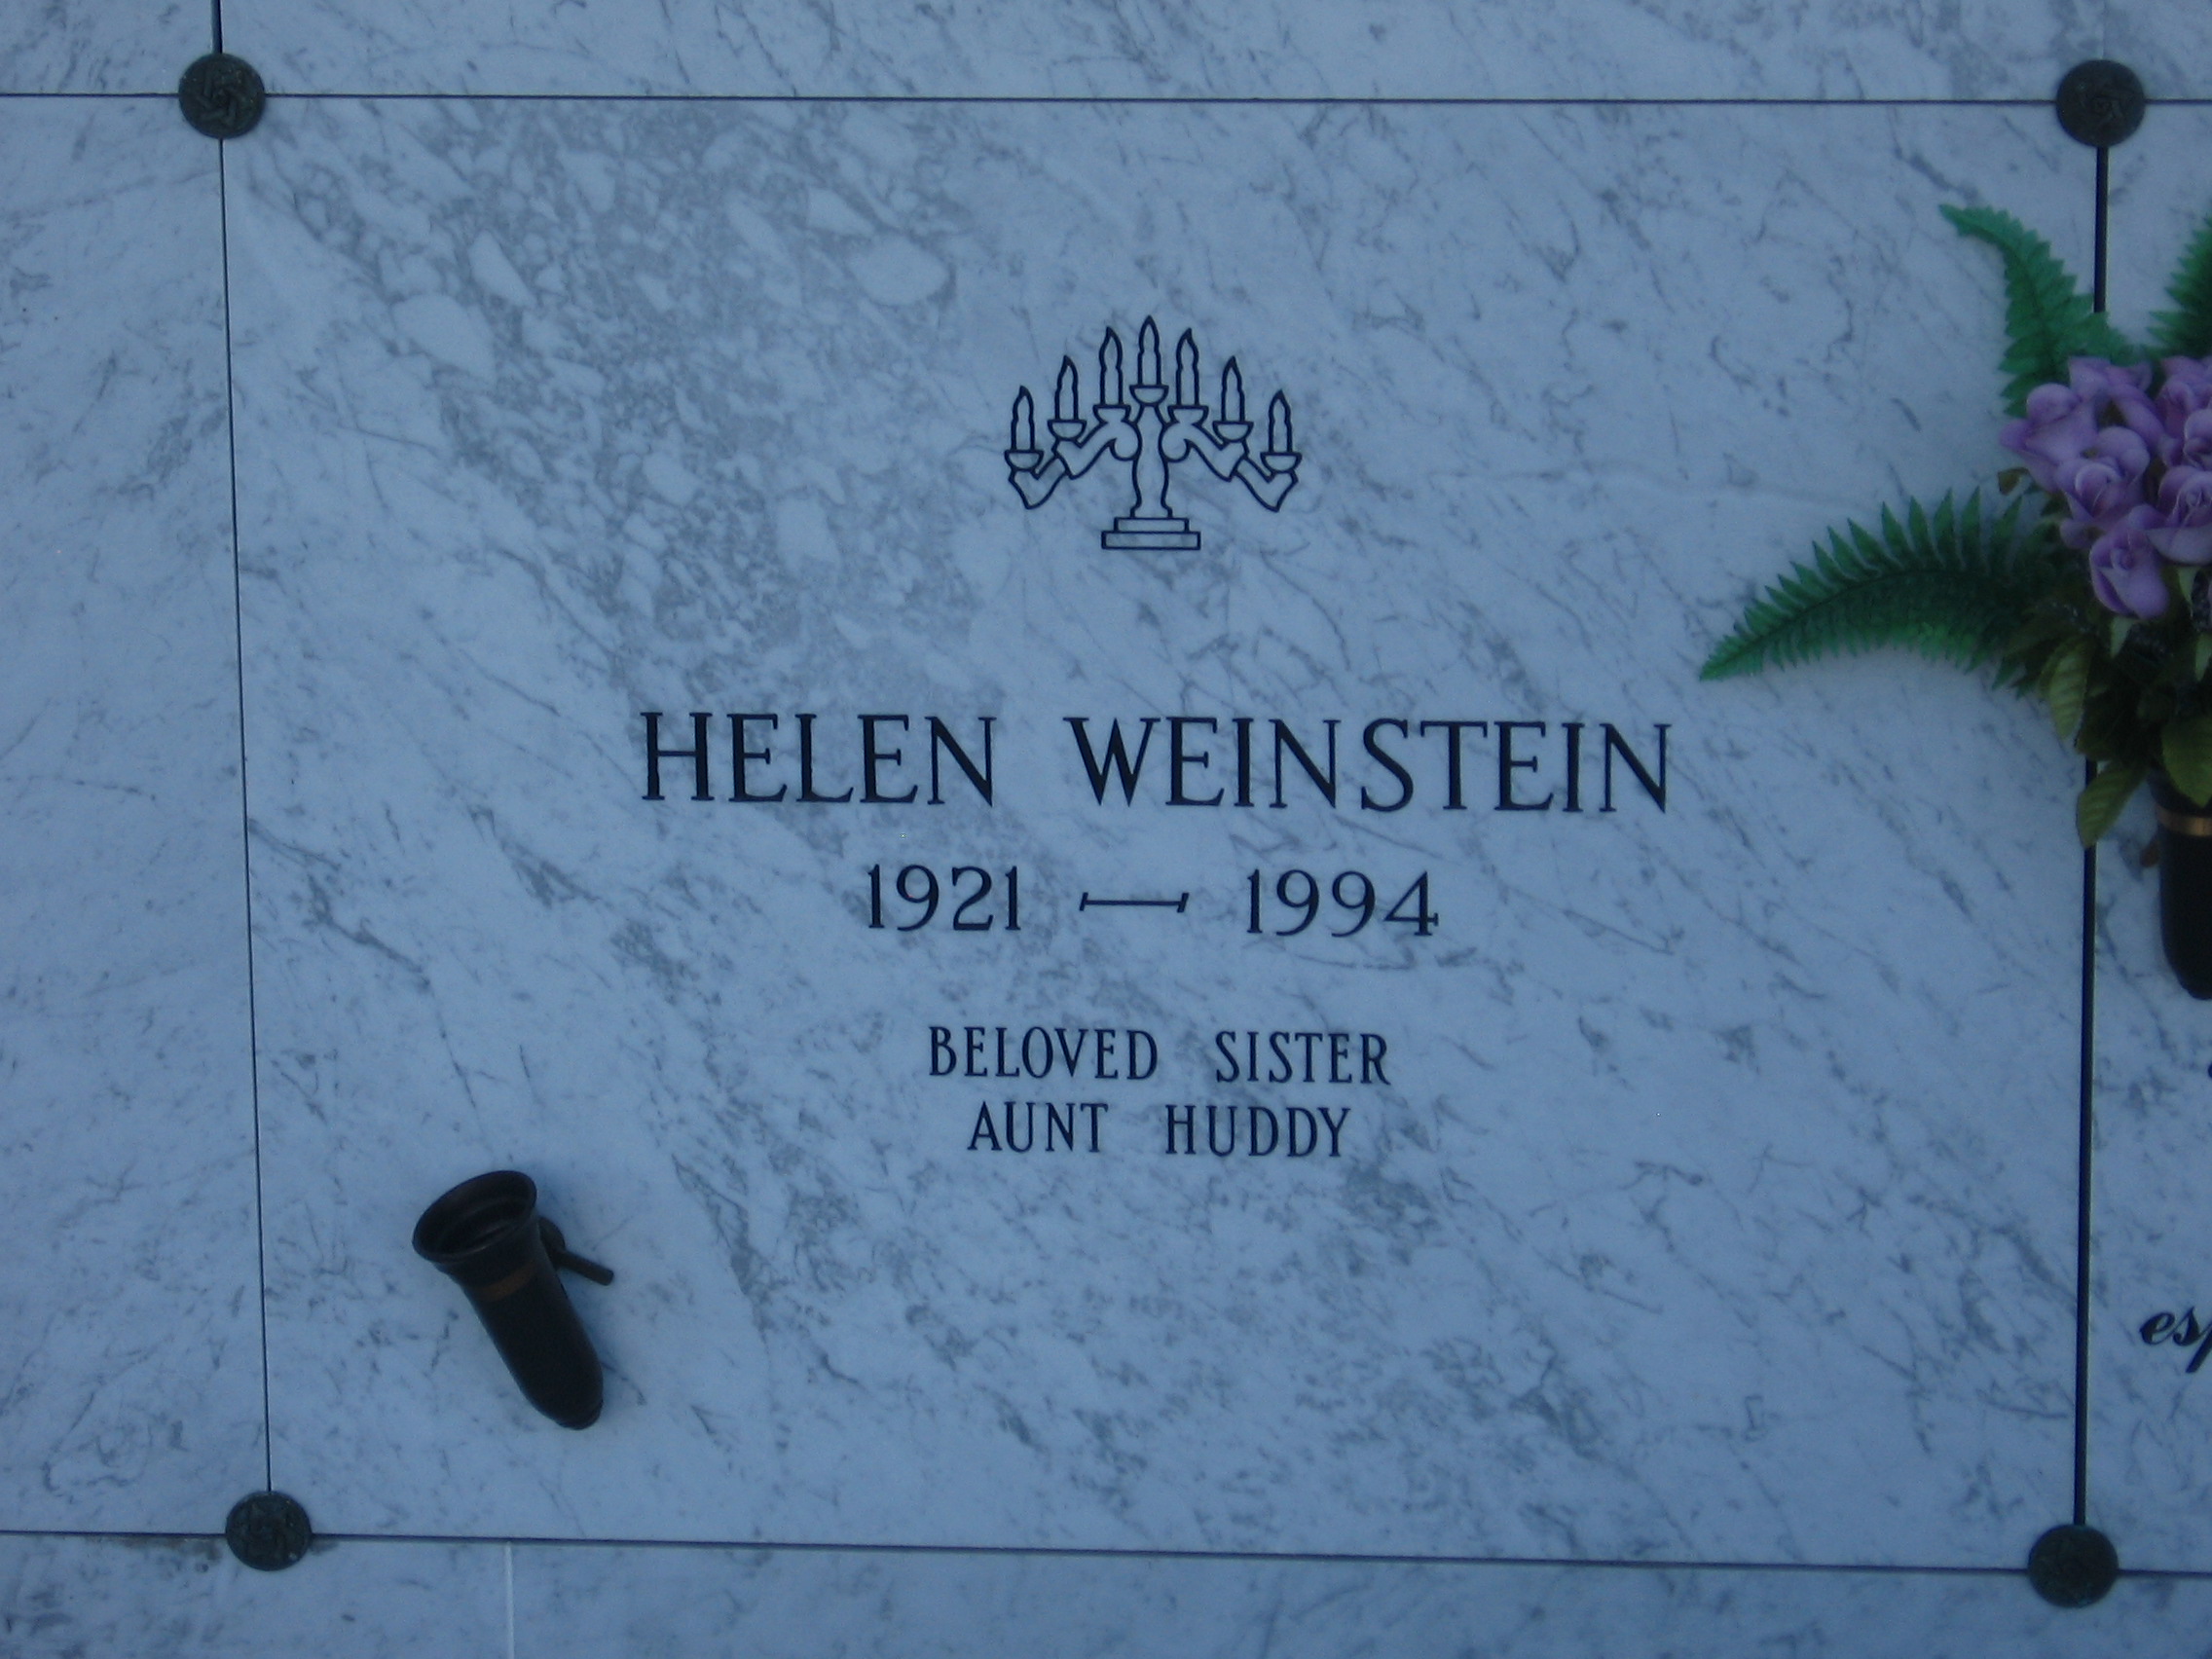 Helen Weinstein